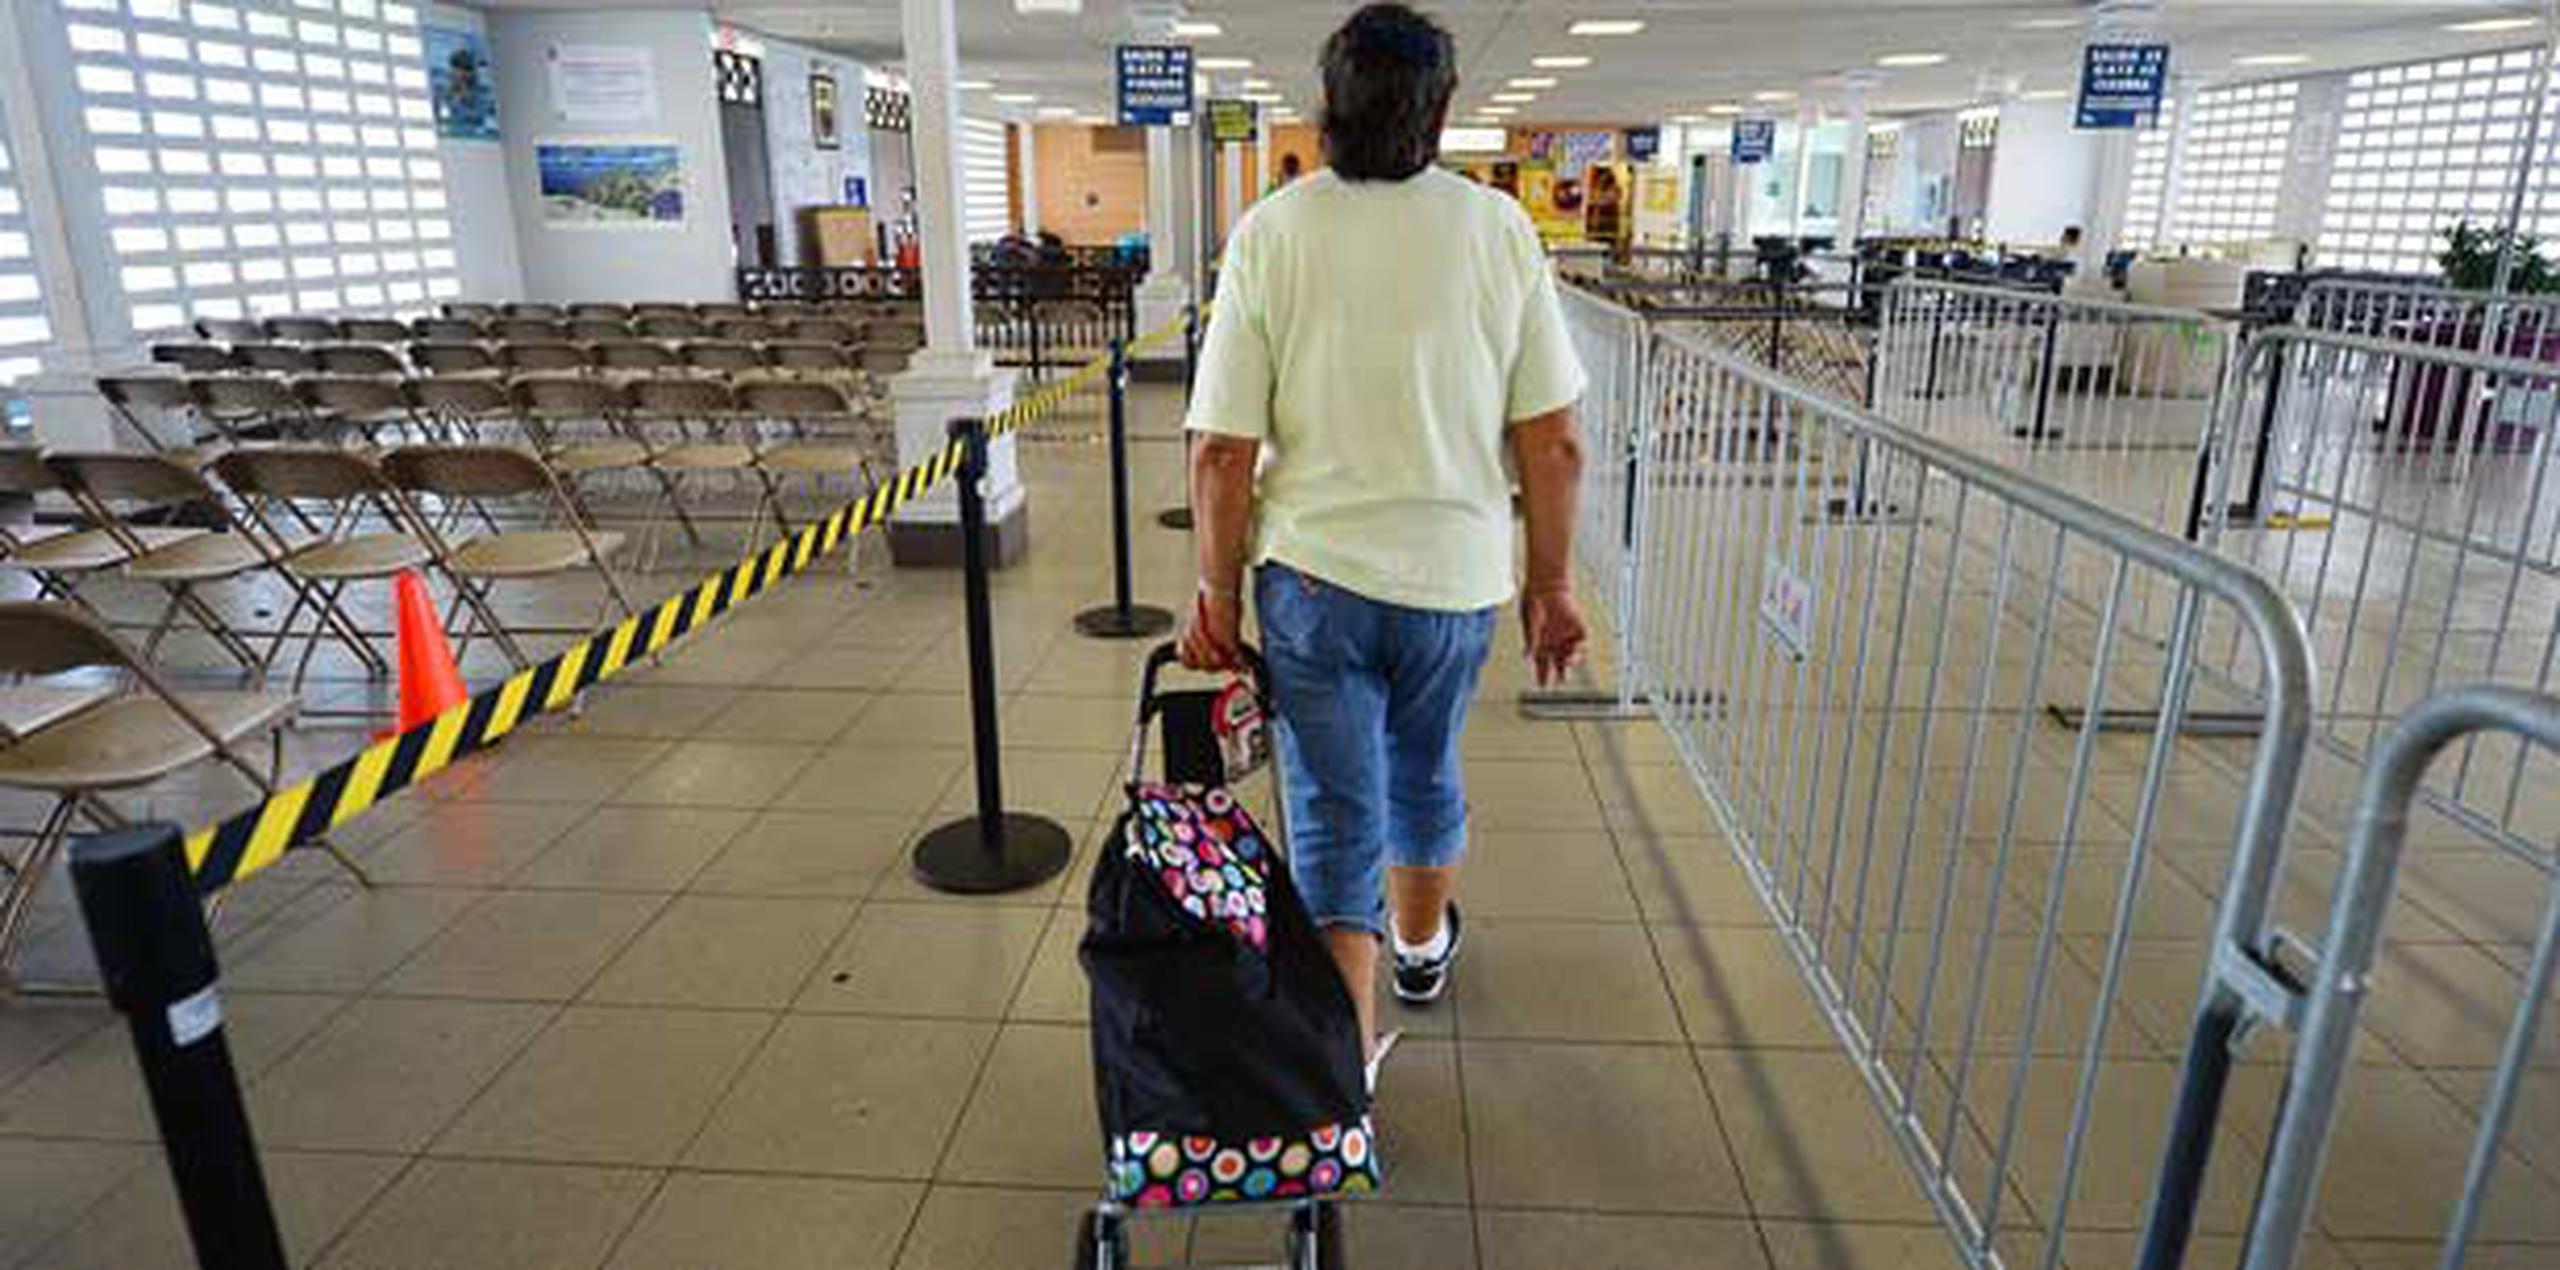 Cerca de 517 personas,  en su mayoría turistas, abandonaron Vieques durante los viajes de las lanchas en la mañana.  (luis.alcaladelolmo@gfrmedia.com)